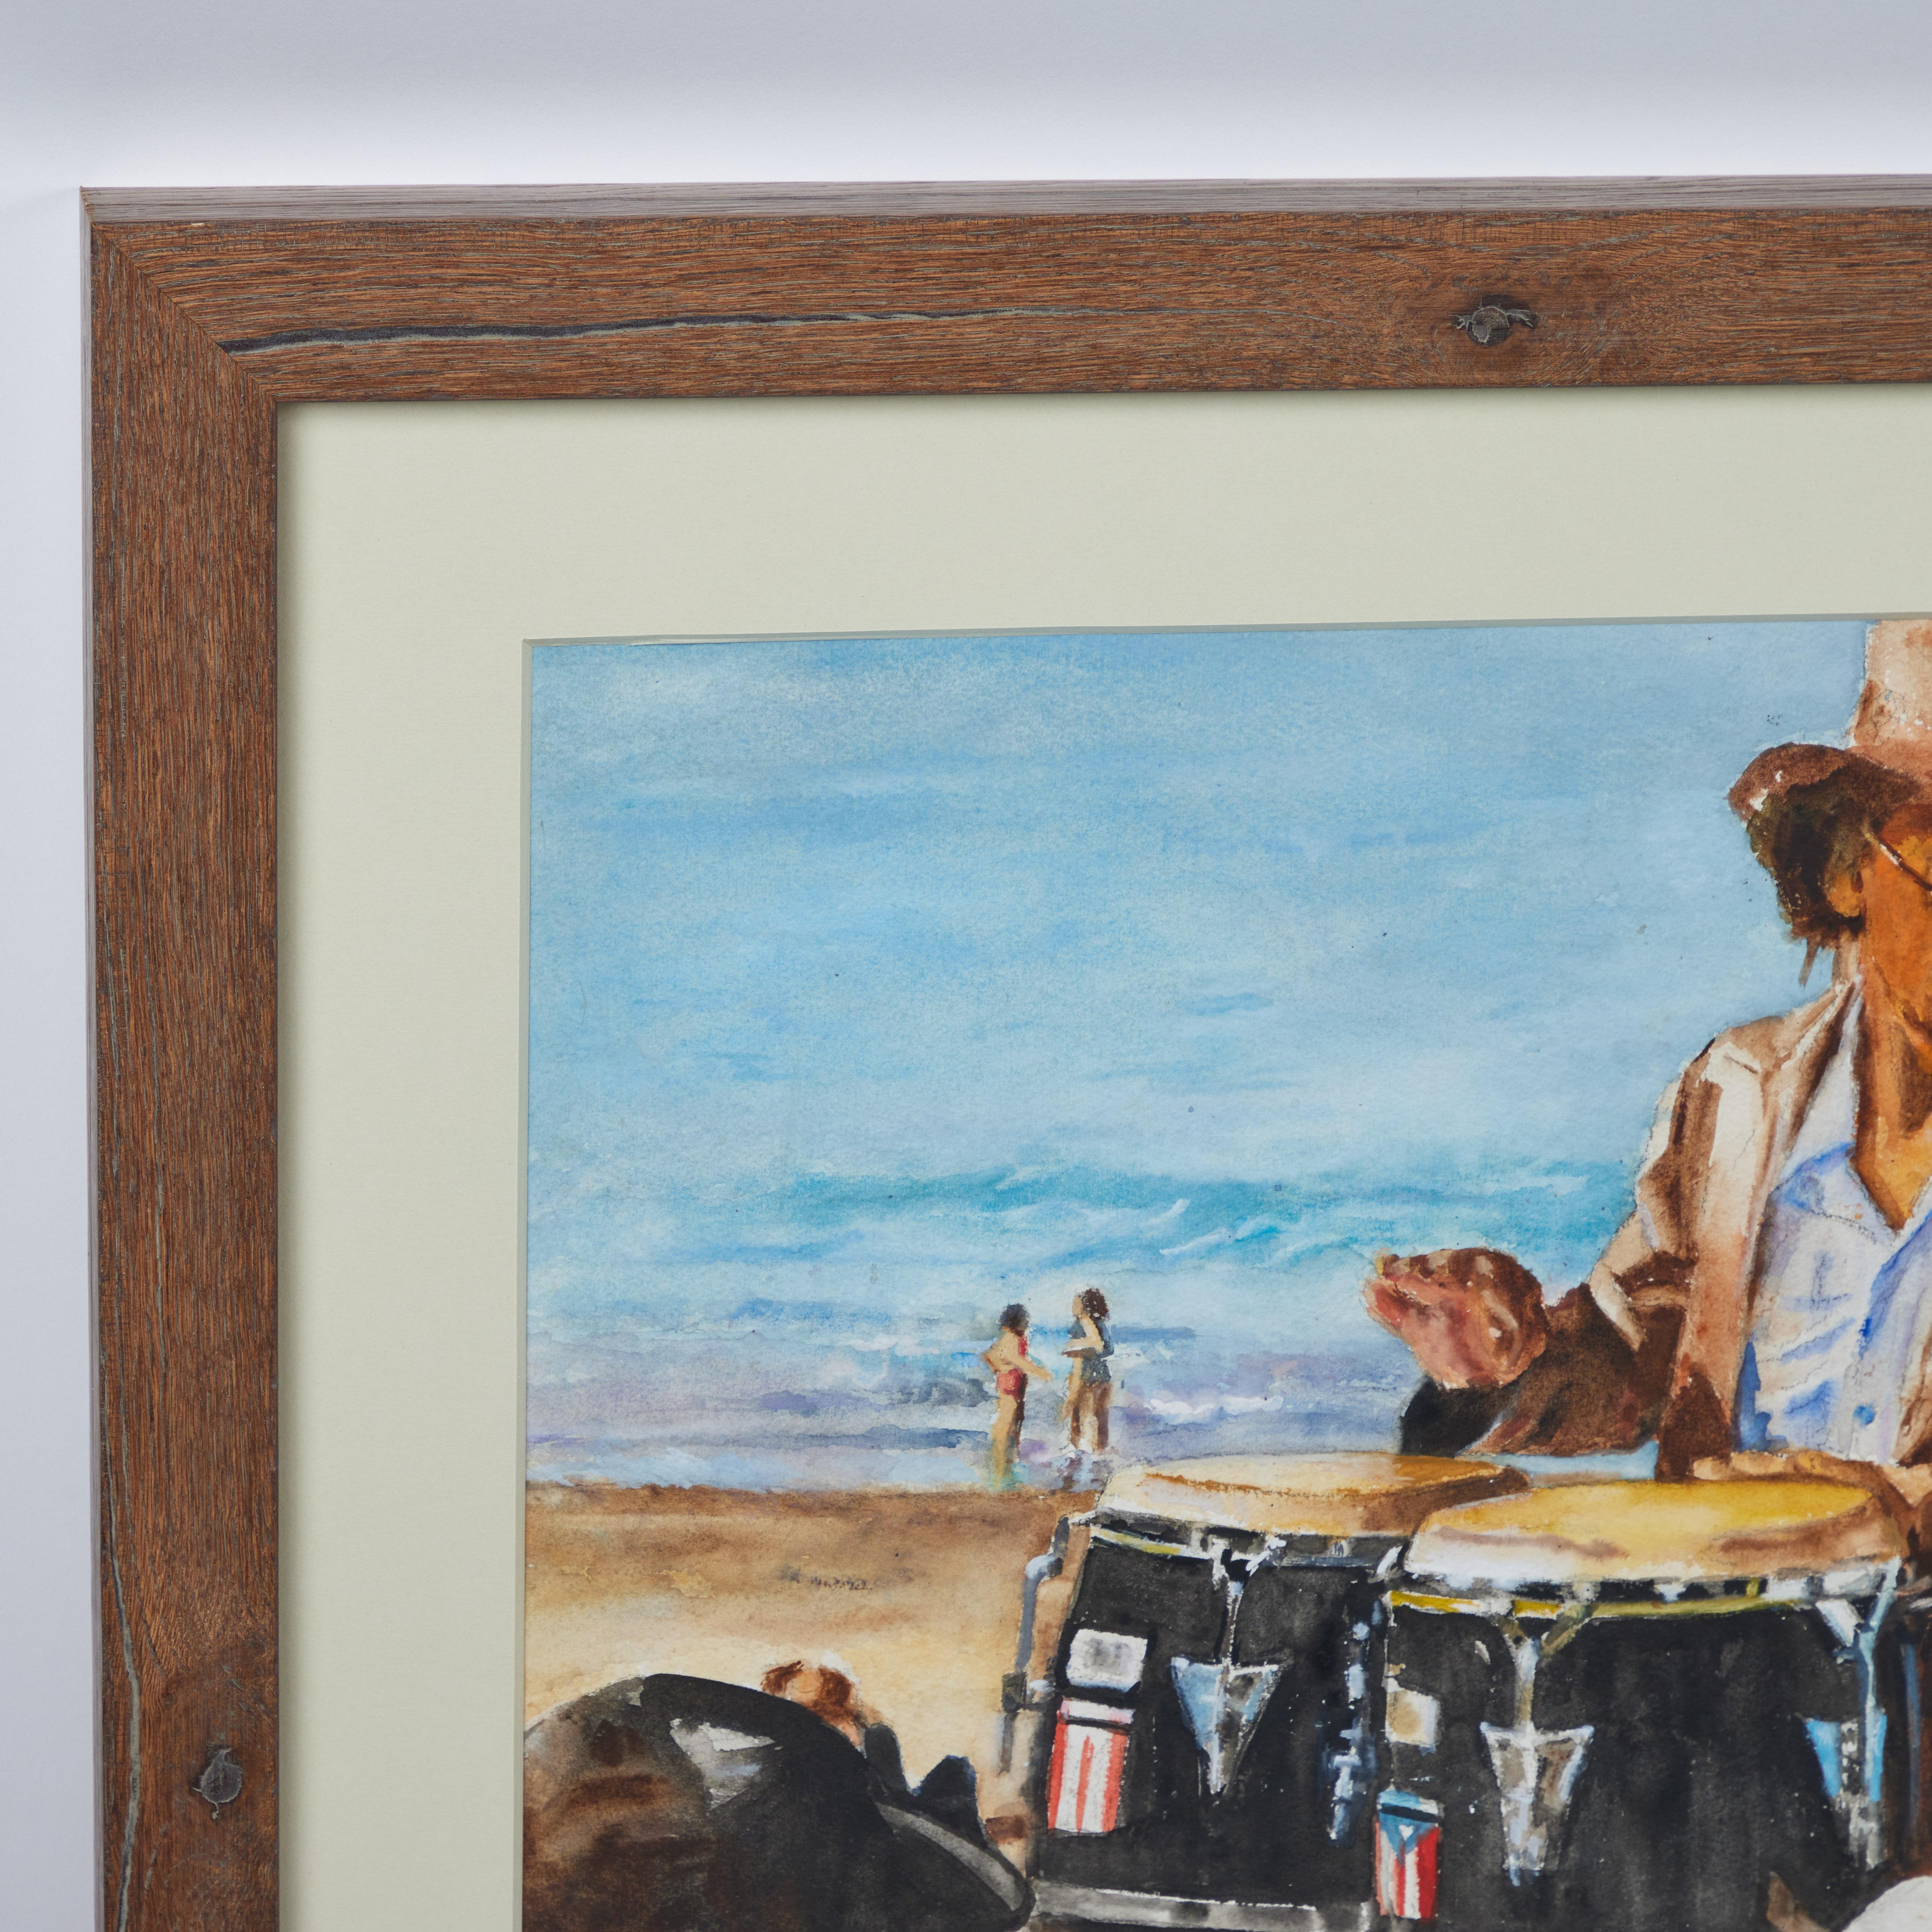 LEBENDIG & PULSIEREND

Wir fühlen uns von dieser fröhlichen Originaldarstellung in Acryl auf Papier angezogen, die ein temperamentvolles  Musiker und seine Anhänger auf der Strandpromenade des Künstlers Pat Berger (um 1970). Es wurde neu paspeliert